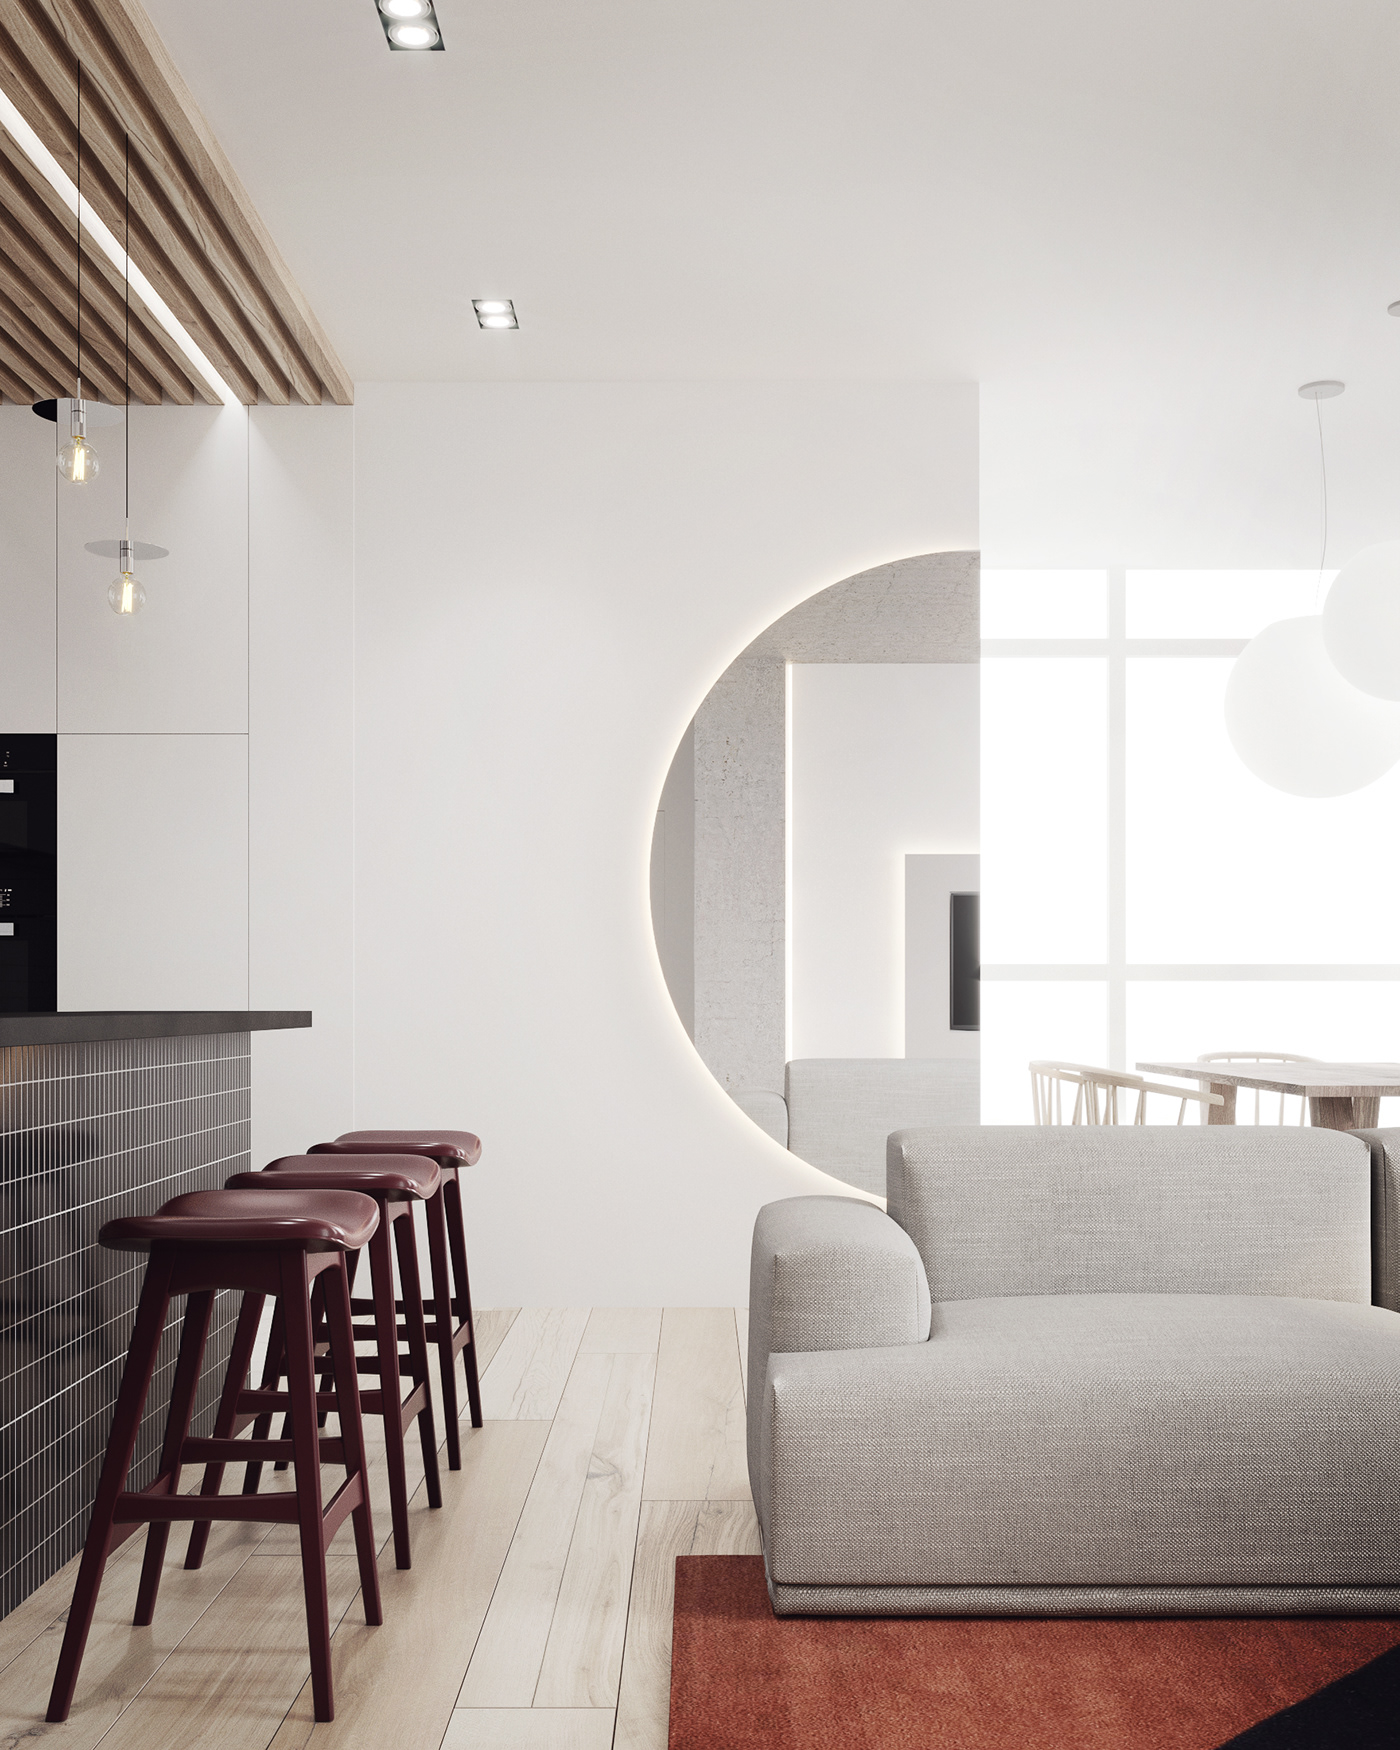 Interior architecture design art home Space  living interiordesign apartment